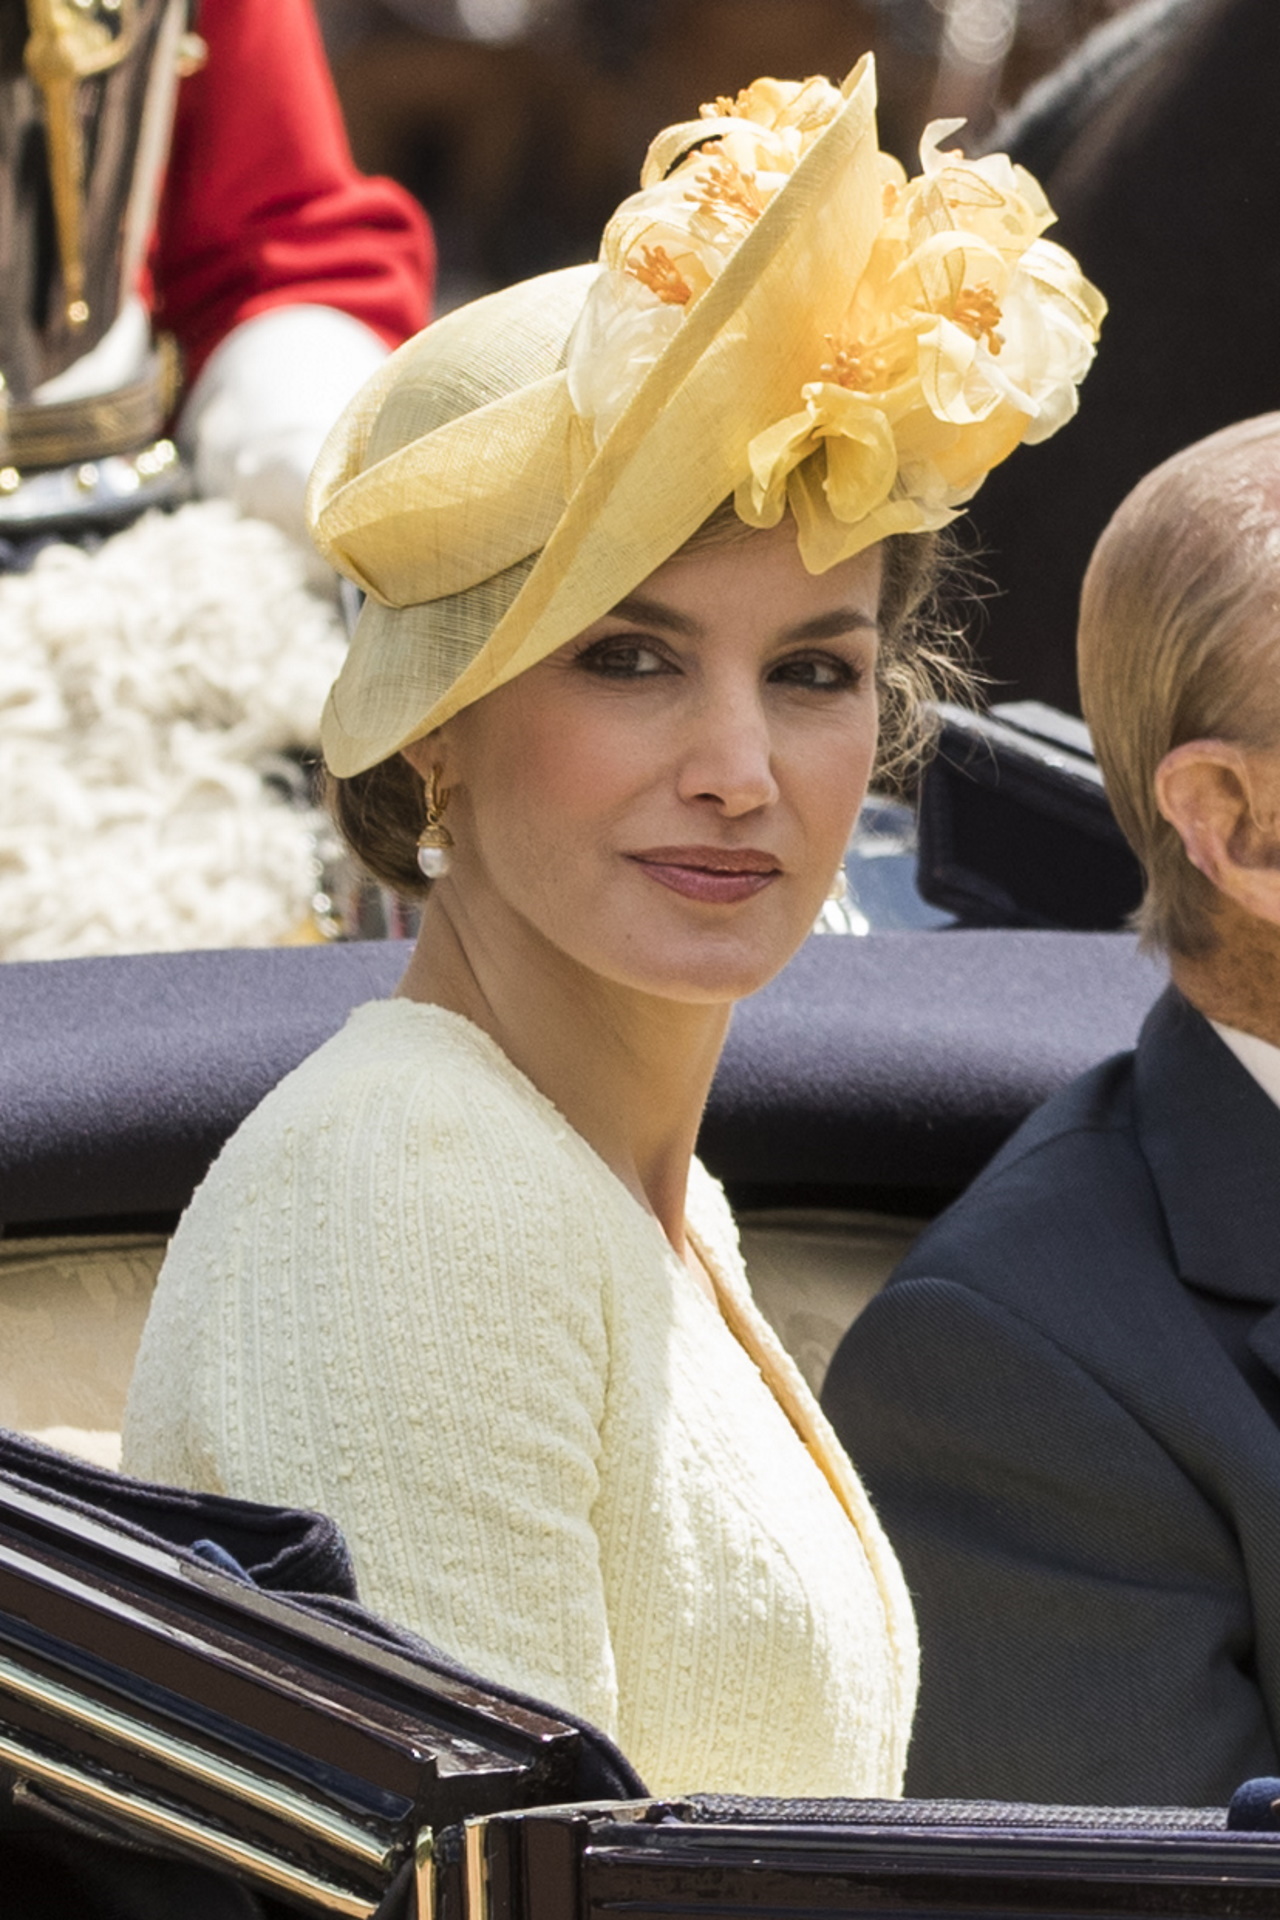 <p><strong>Кралицата на Испания Летисия</strong></p>

<p>Кралицата на Испания беше видение в жълто, когато дойде в Бъкингамския дворец през 2017 г. на официална визита от краля и кралицата на Испания. Уникалната ѝ шапка беше в същия цвят като роклята ѝ.</p>